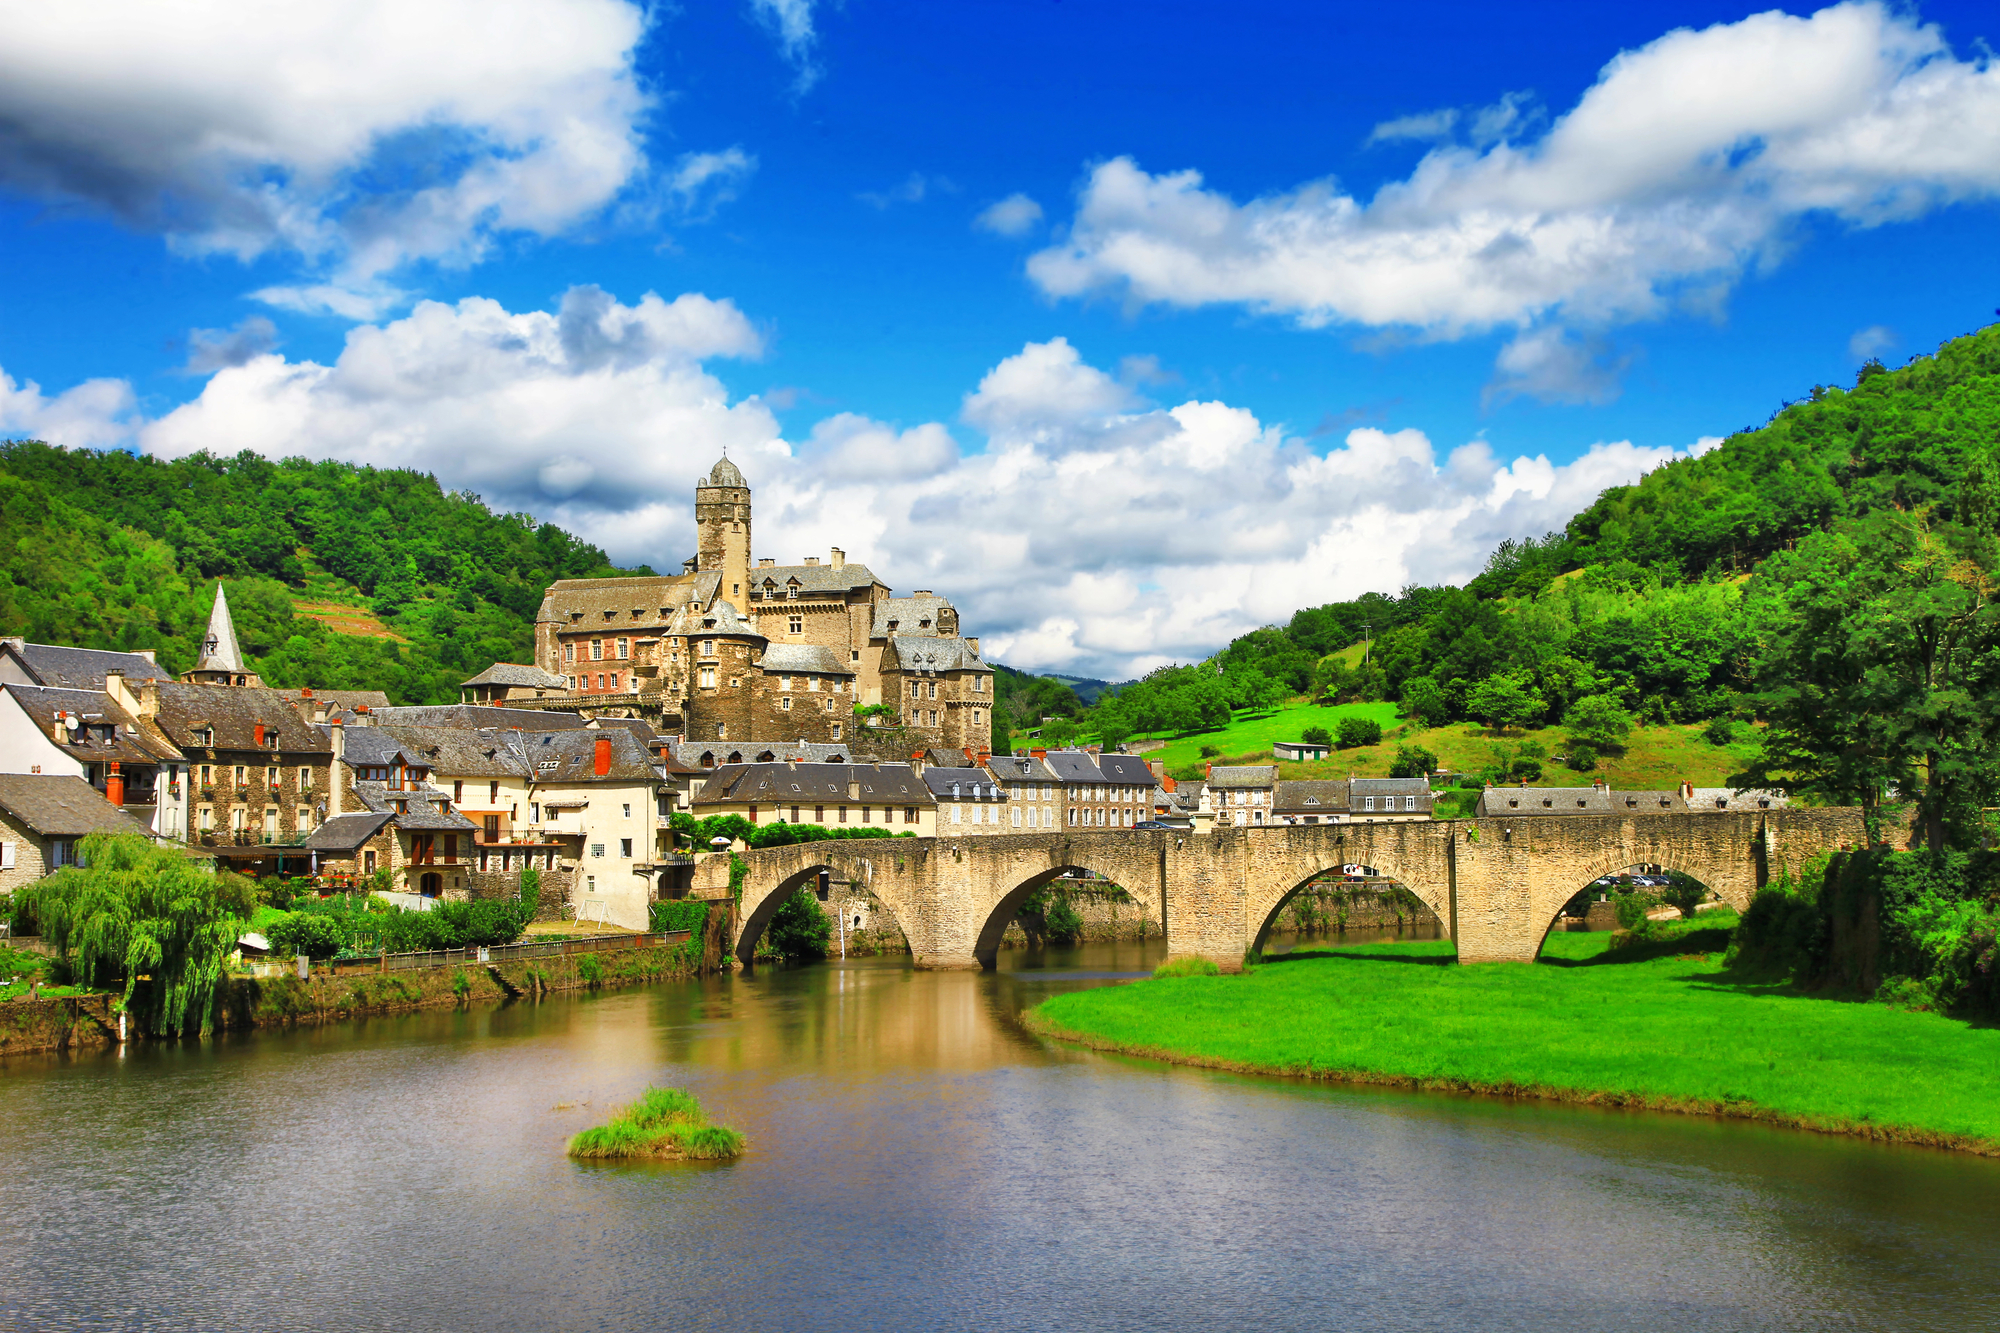 Estaing, Découvrez Estaing (Aveyron) dans la vallée du Lot, halte sur la Via Podiensis vers Compostelle dominée par son château médiéval, un des plus beaux villages de France /crédit MAUGLI - DepositPhoto